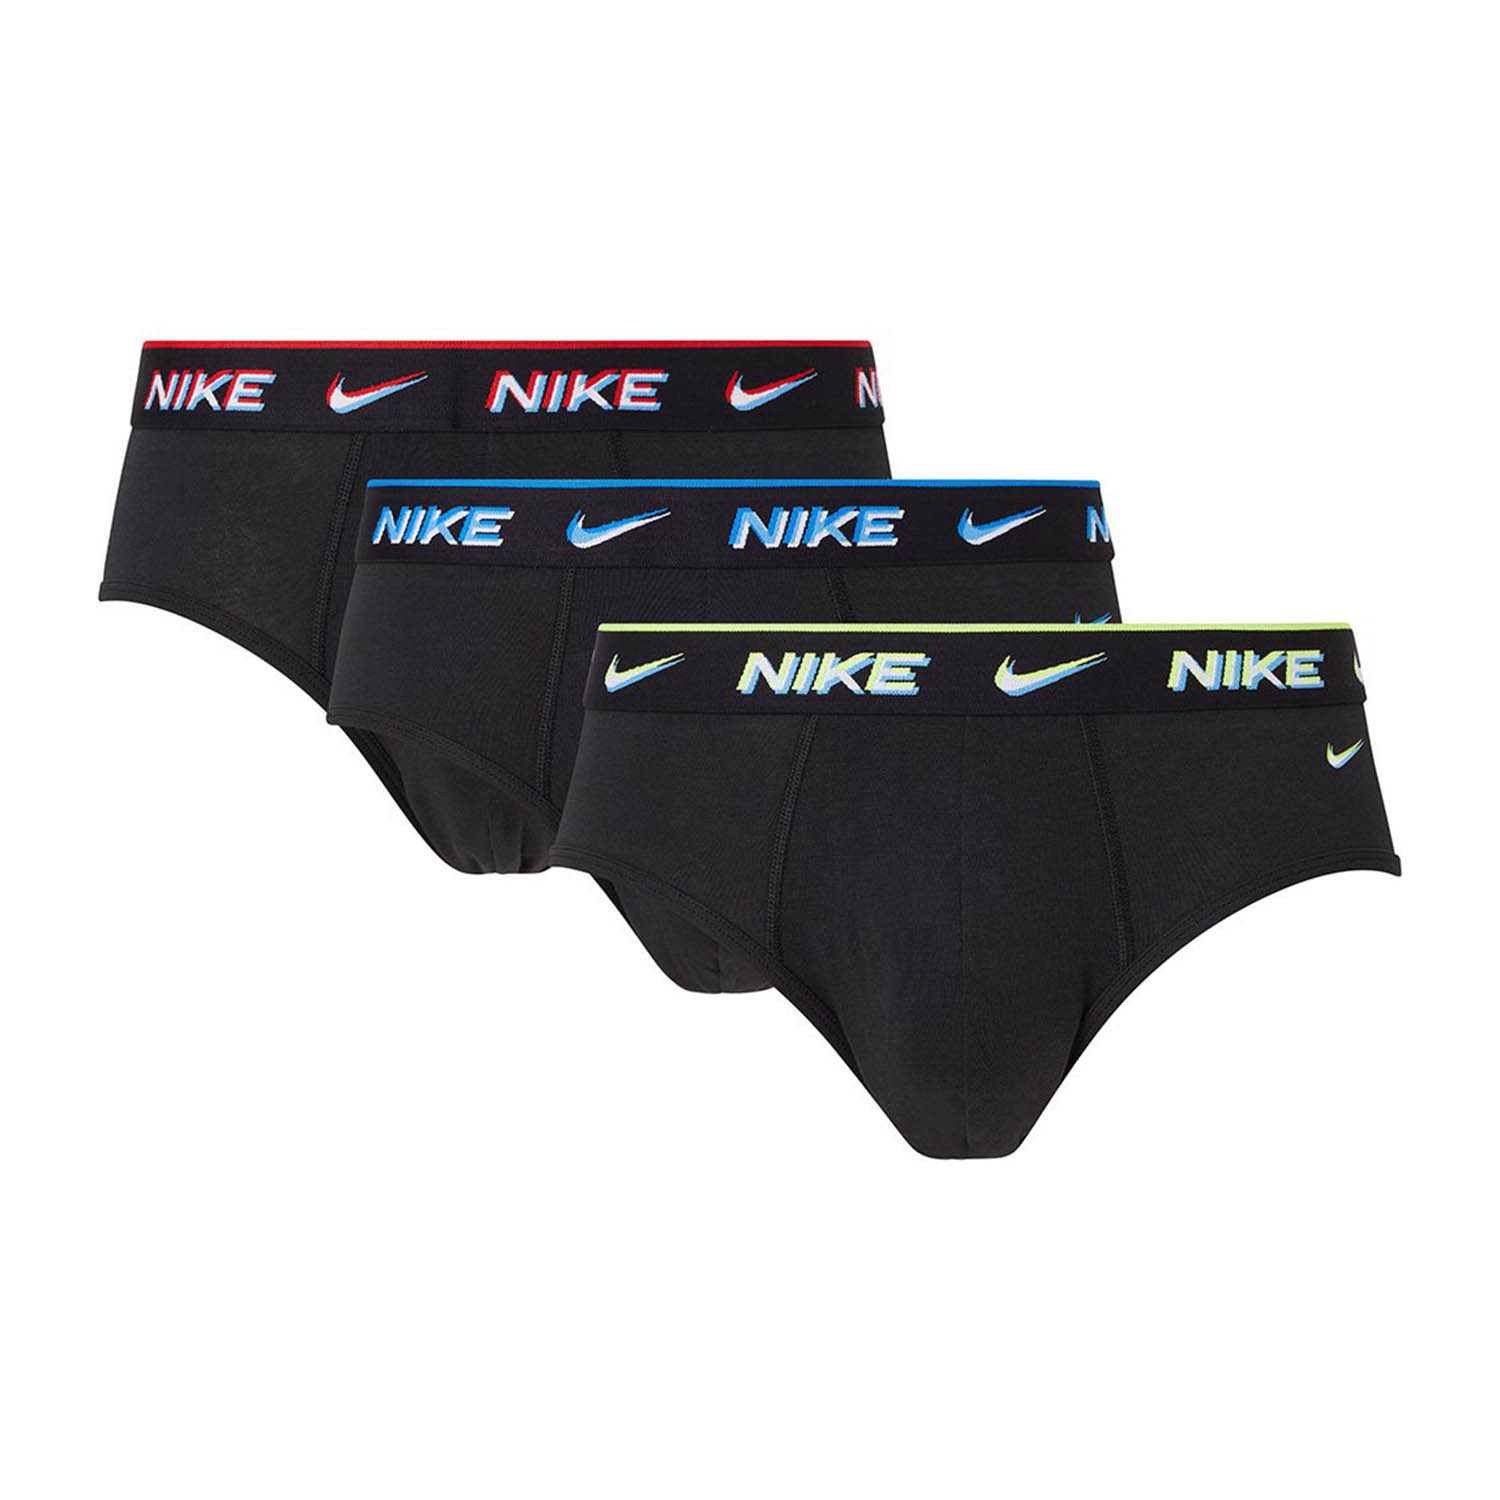 Nike Graphic x 3 Men's Underwear Briefs - Black/Rust/Charcaol